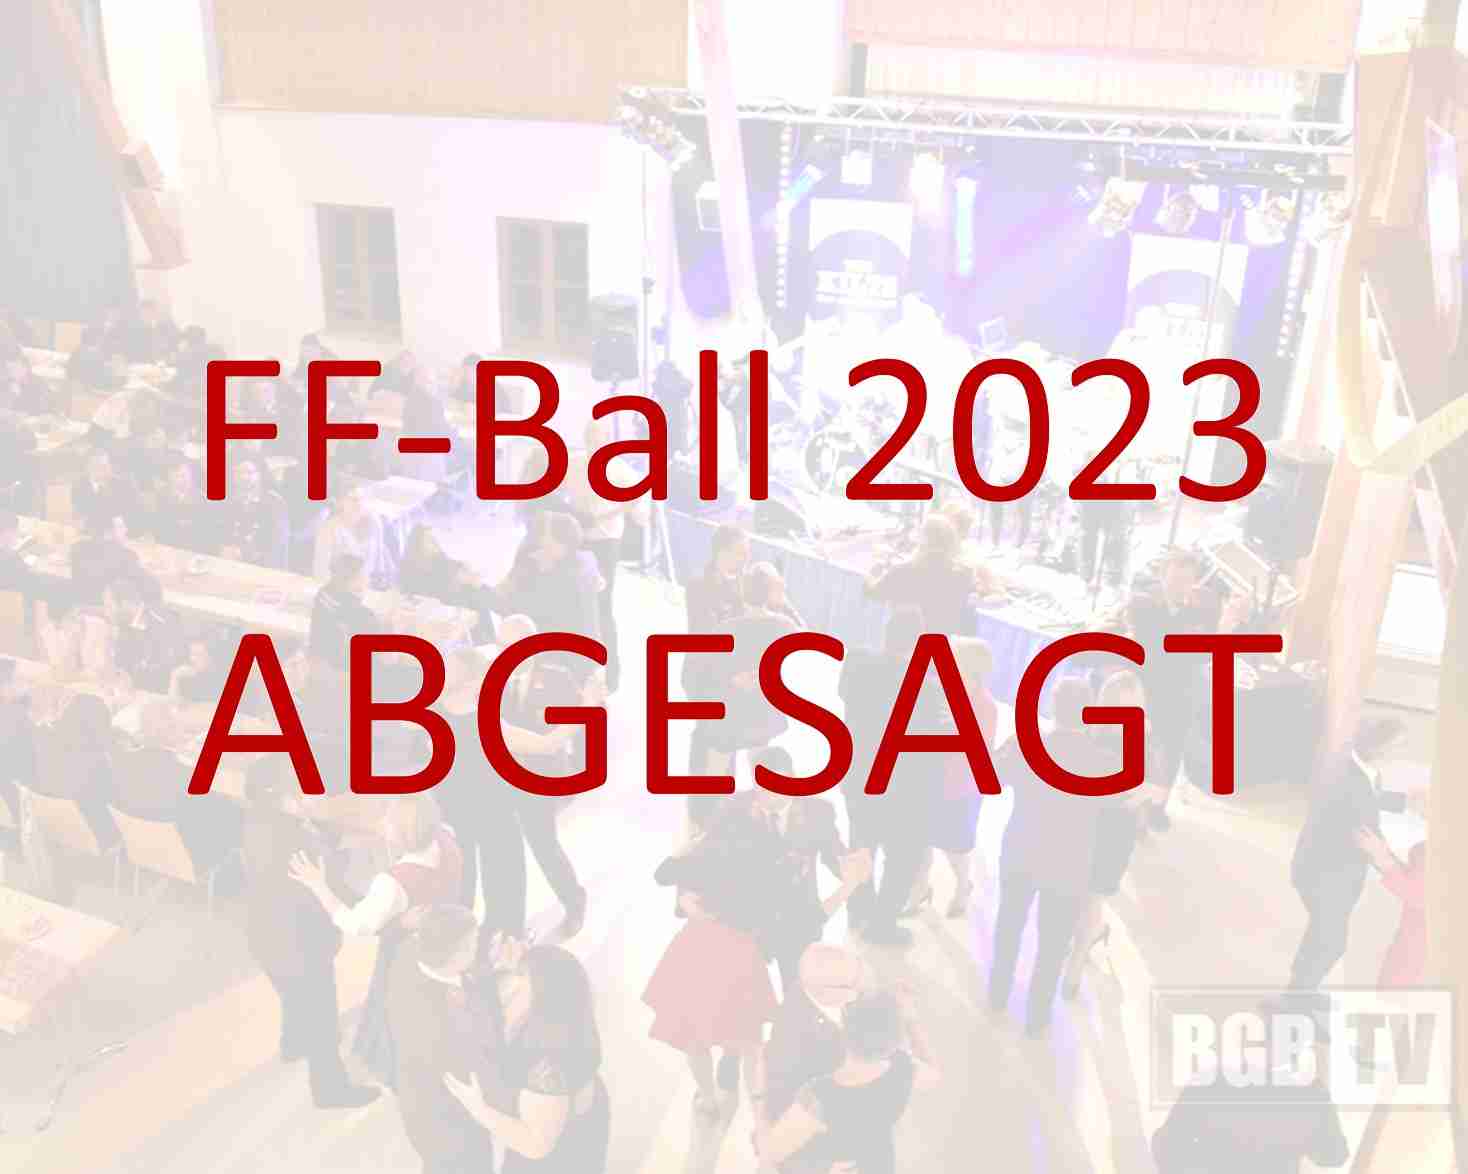 FF-Ball 2023 ABGESAGT